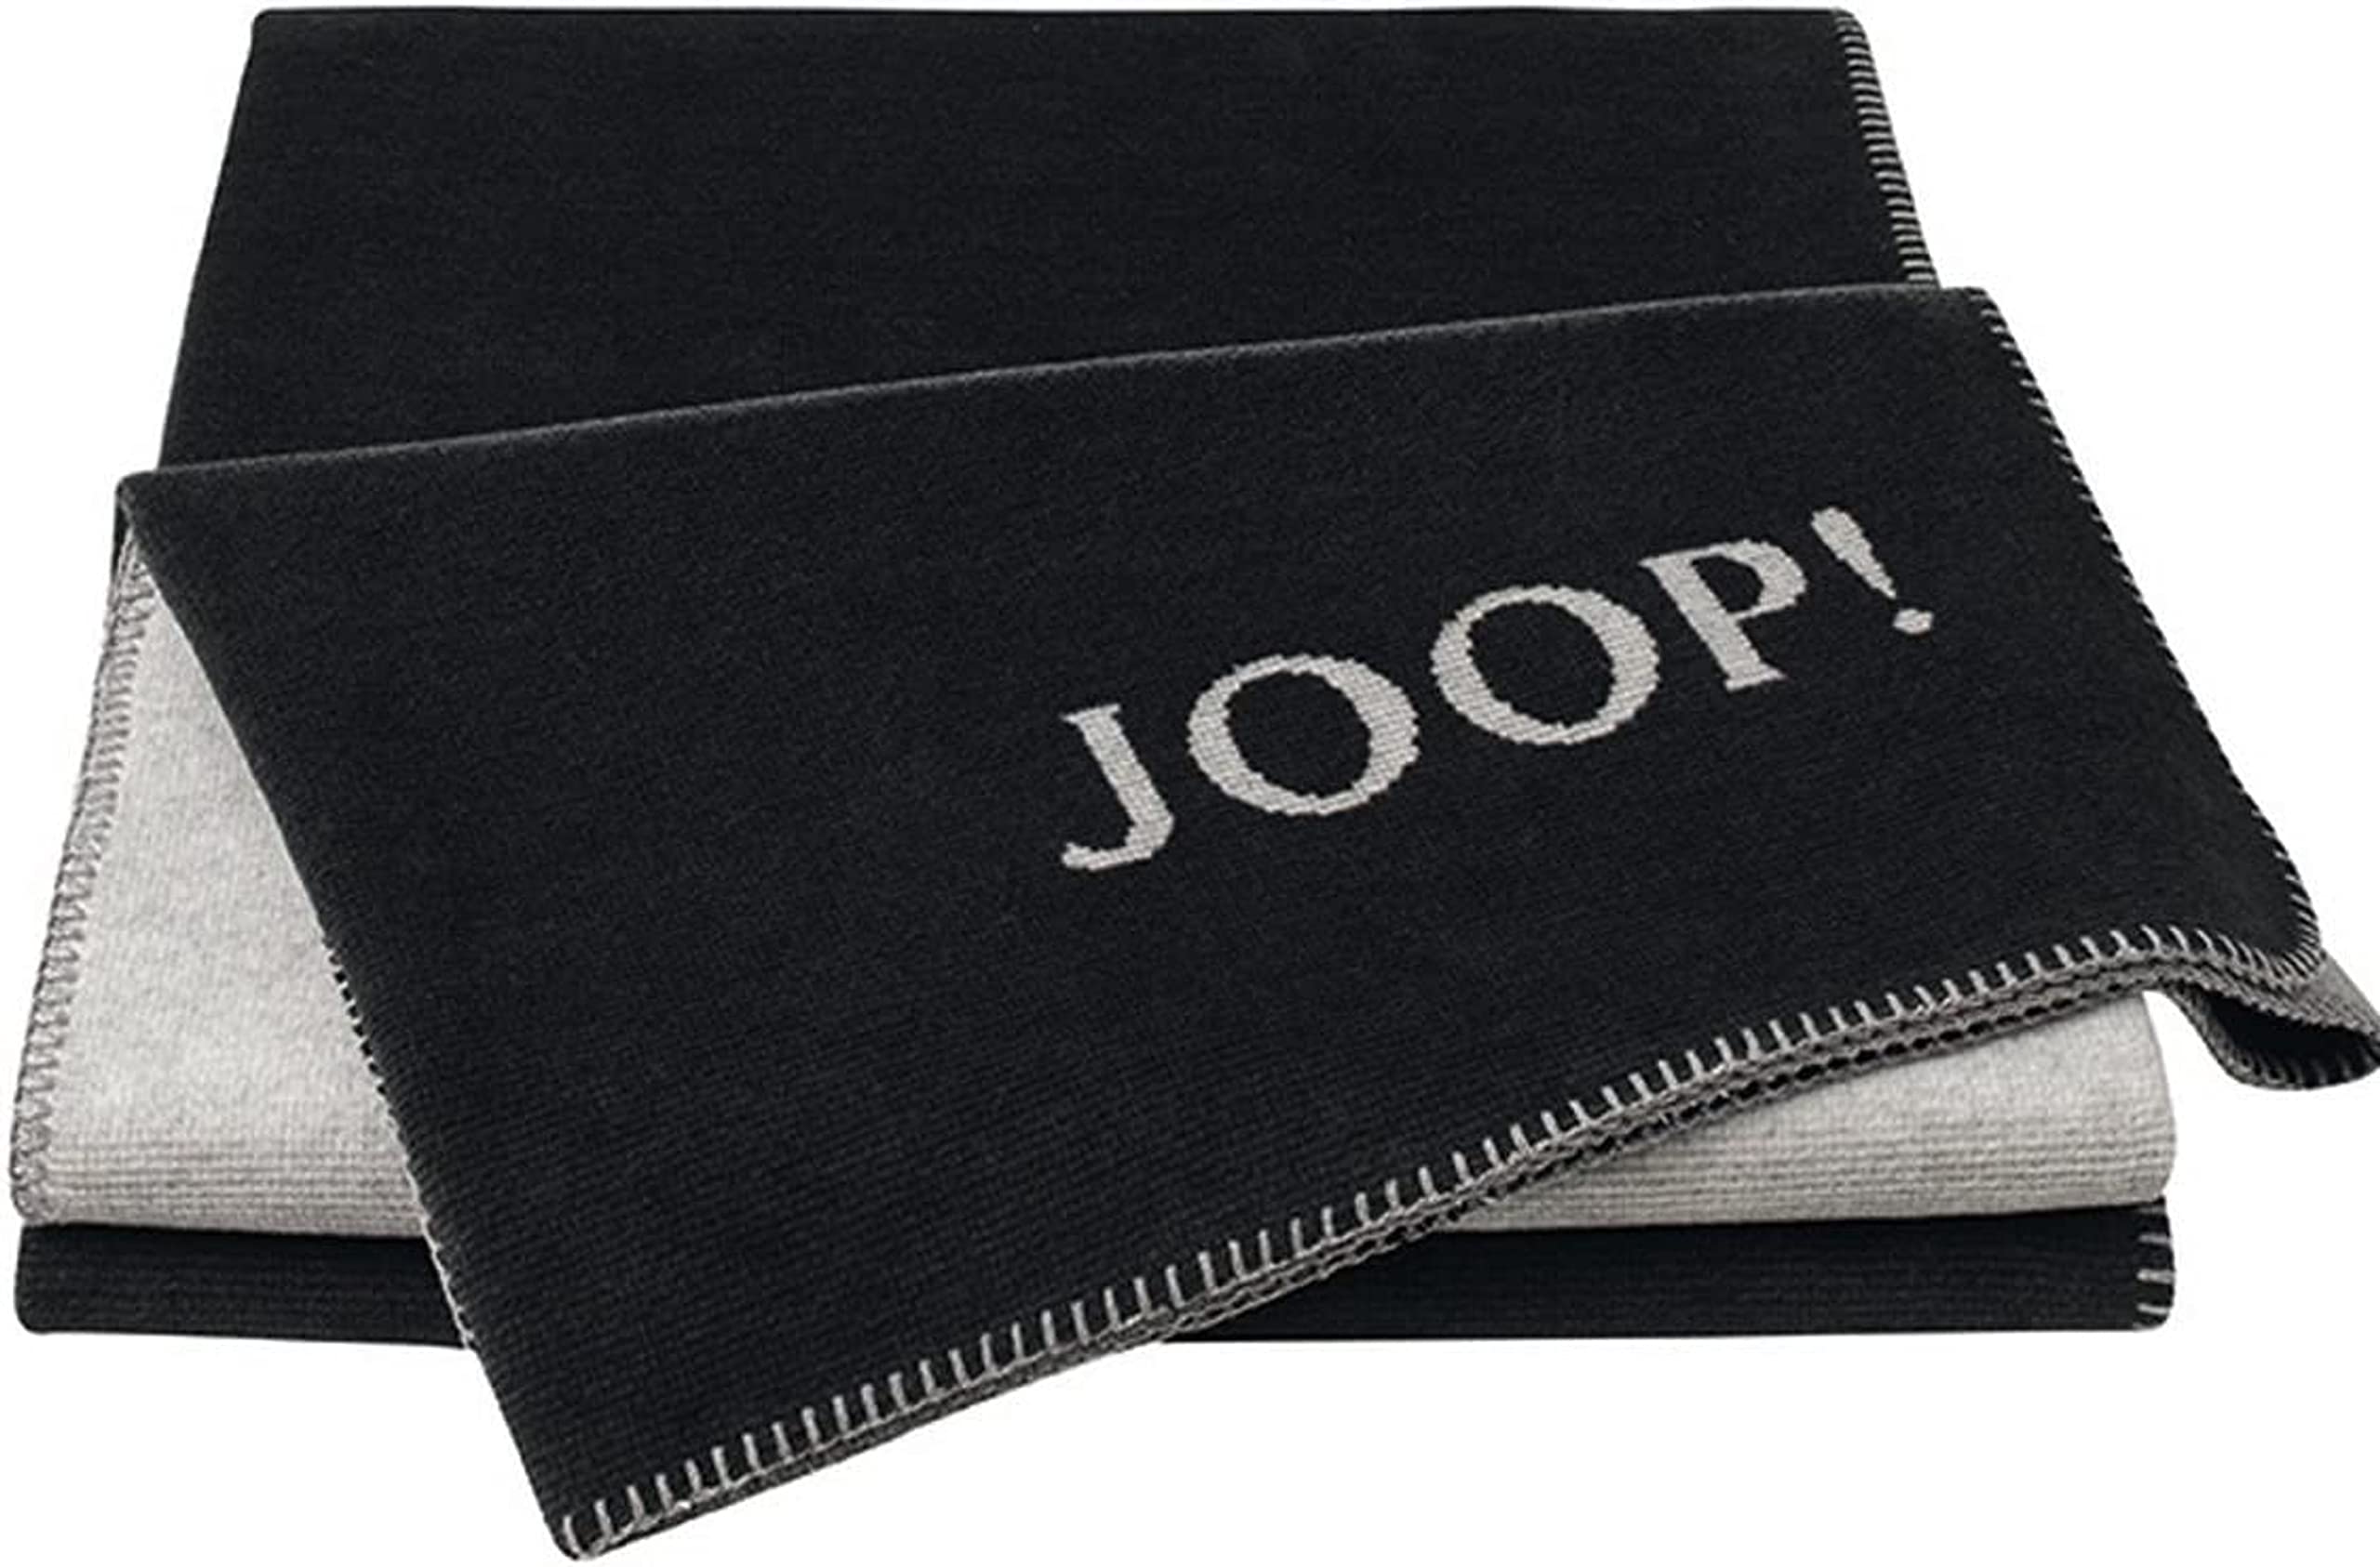 JOOP! Plaid Melange Doubleface | Anthrazit-Silber - 150 x 200